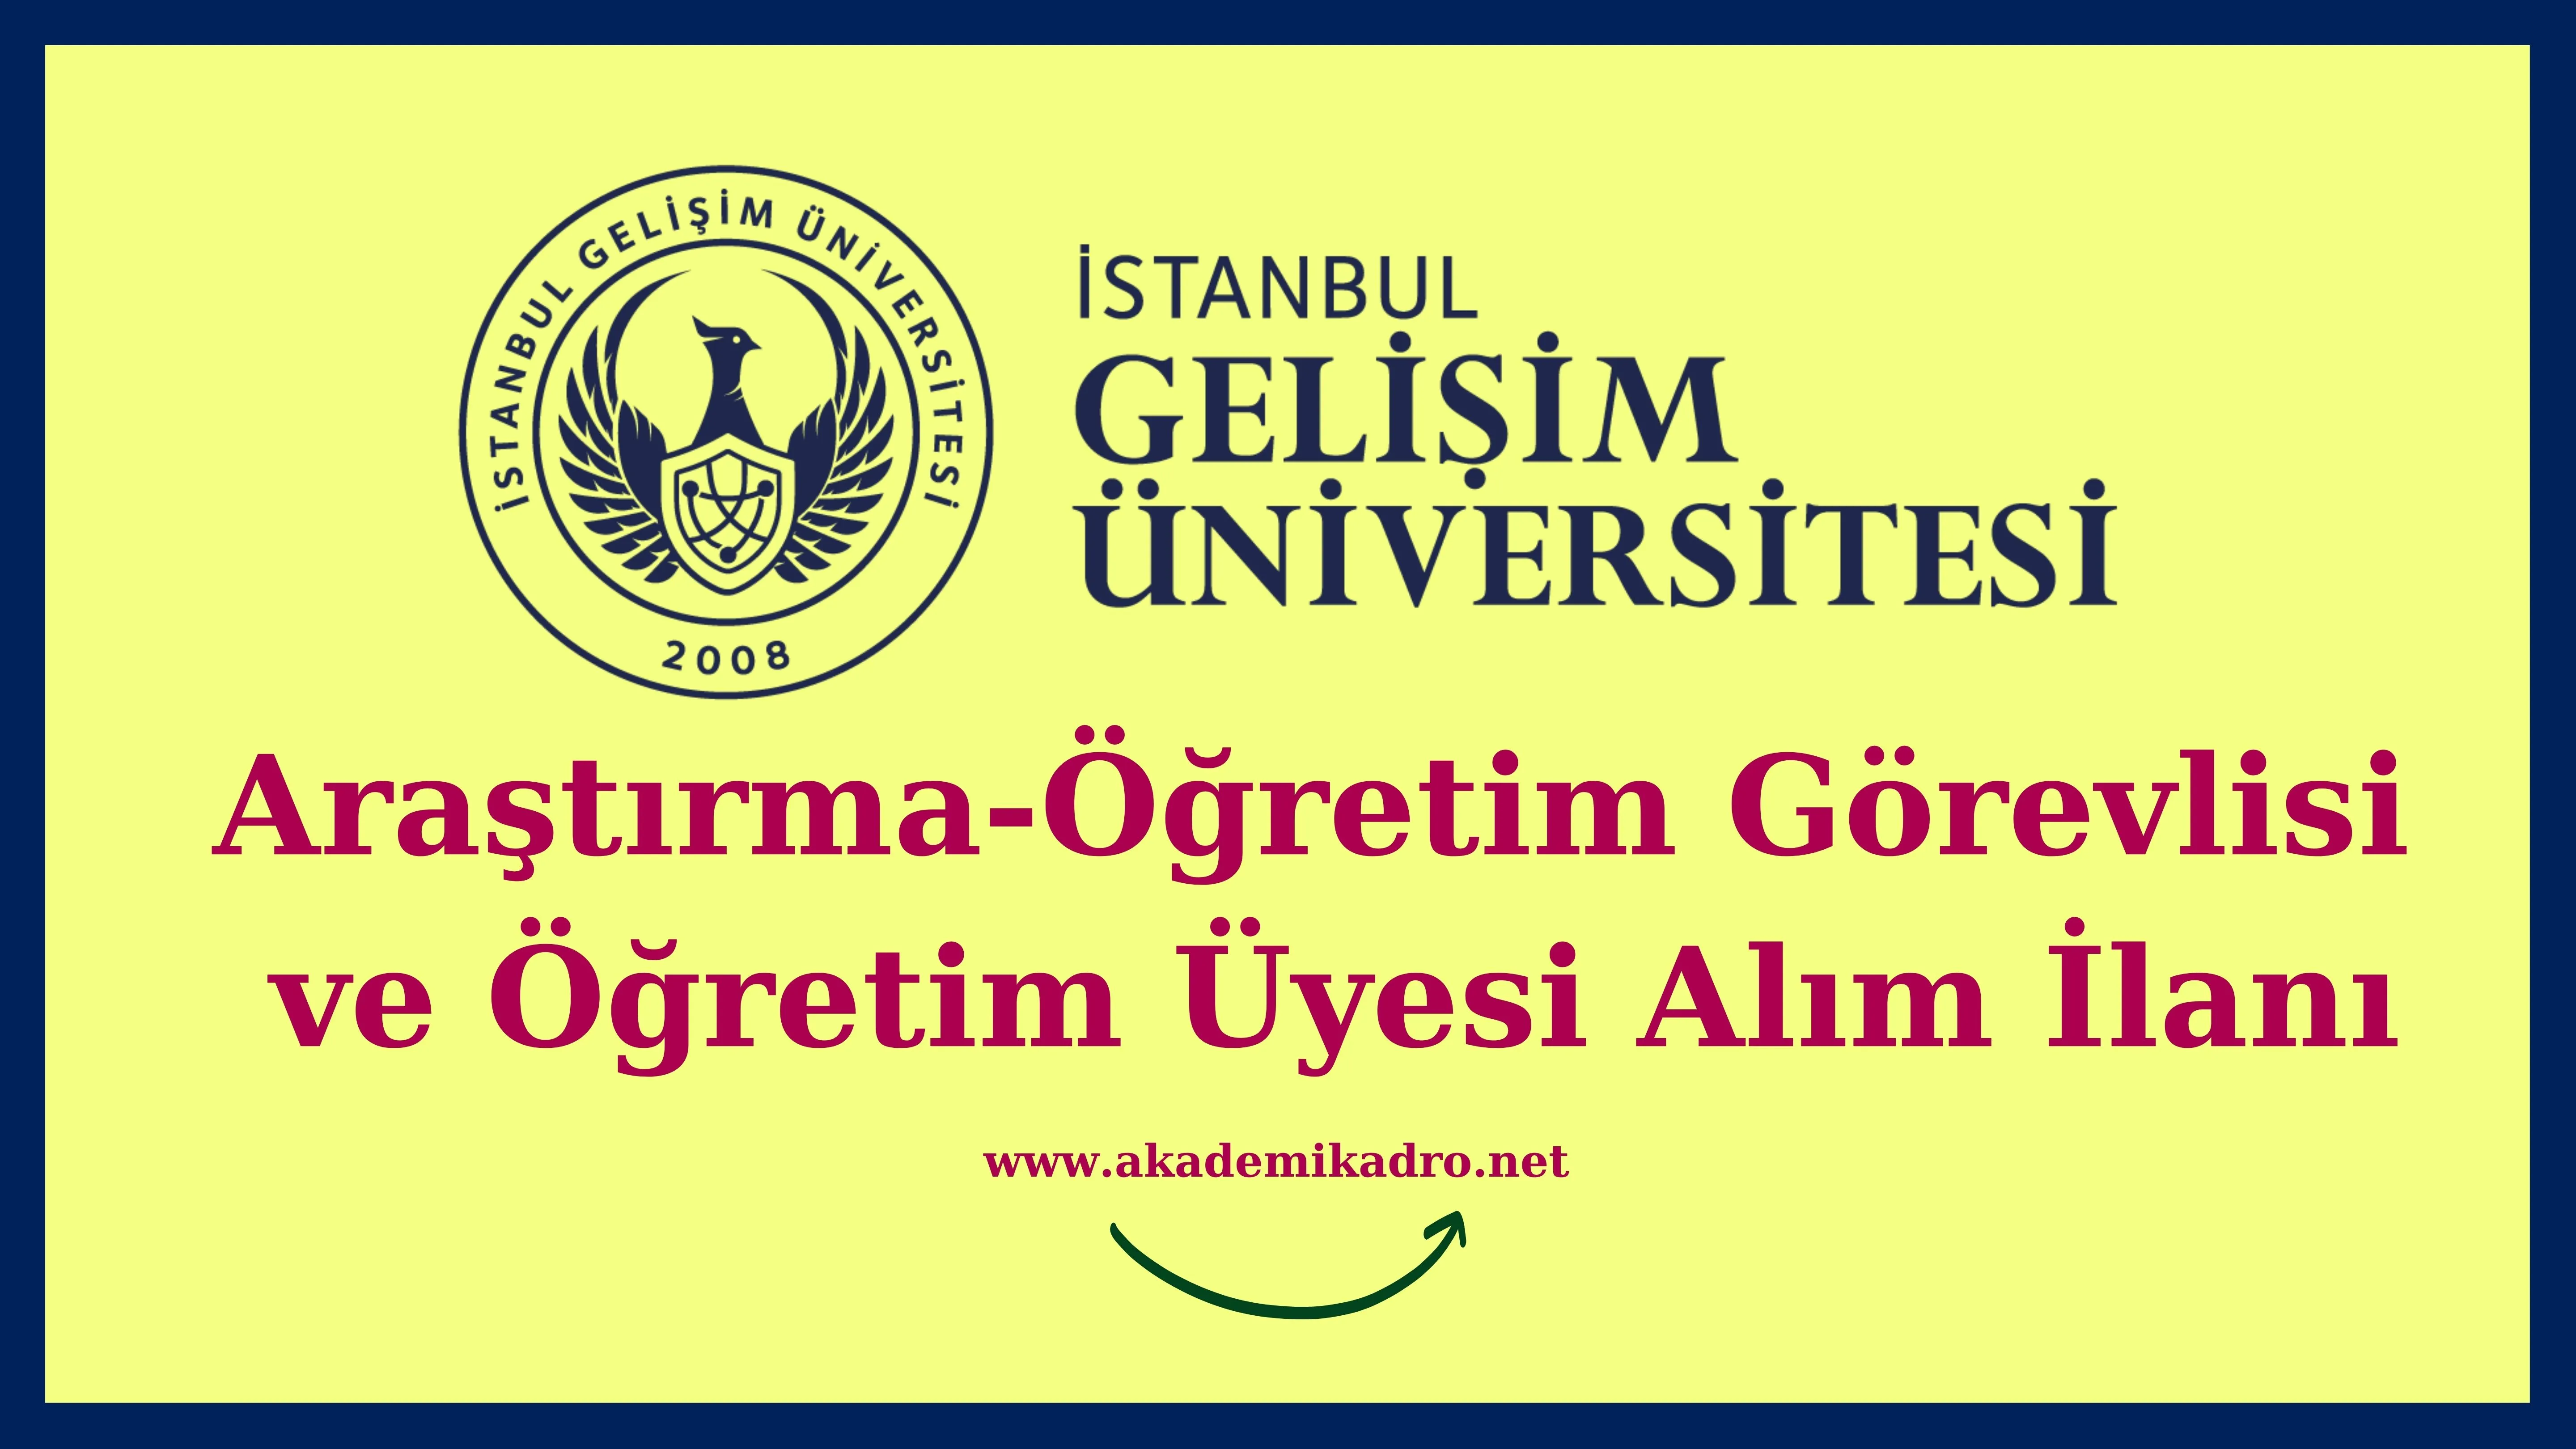 İstanbul Gelişim Üniversitesi 10 Araştırma görevlisi, 19 Öğretim görevlisi, 204 Öğretim üyesi alacak.